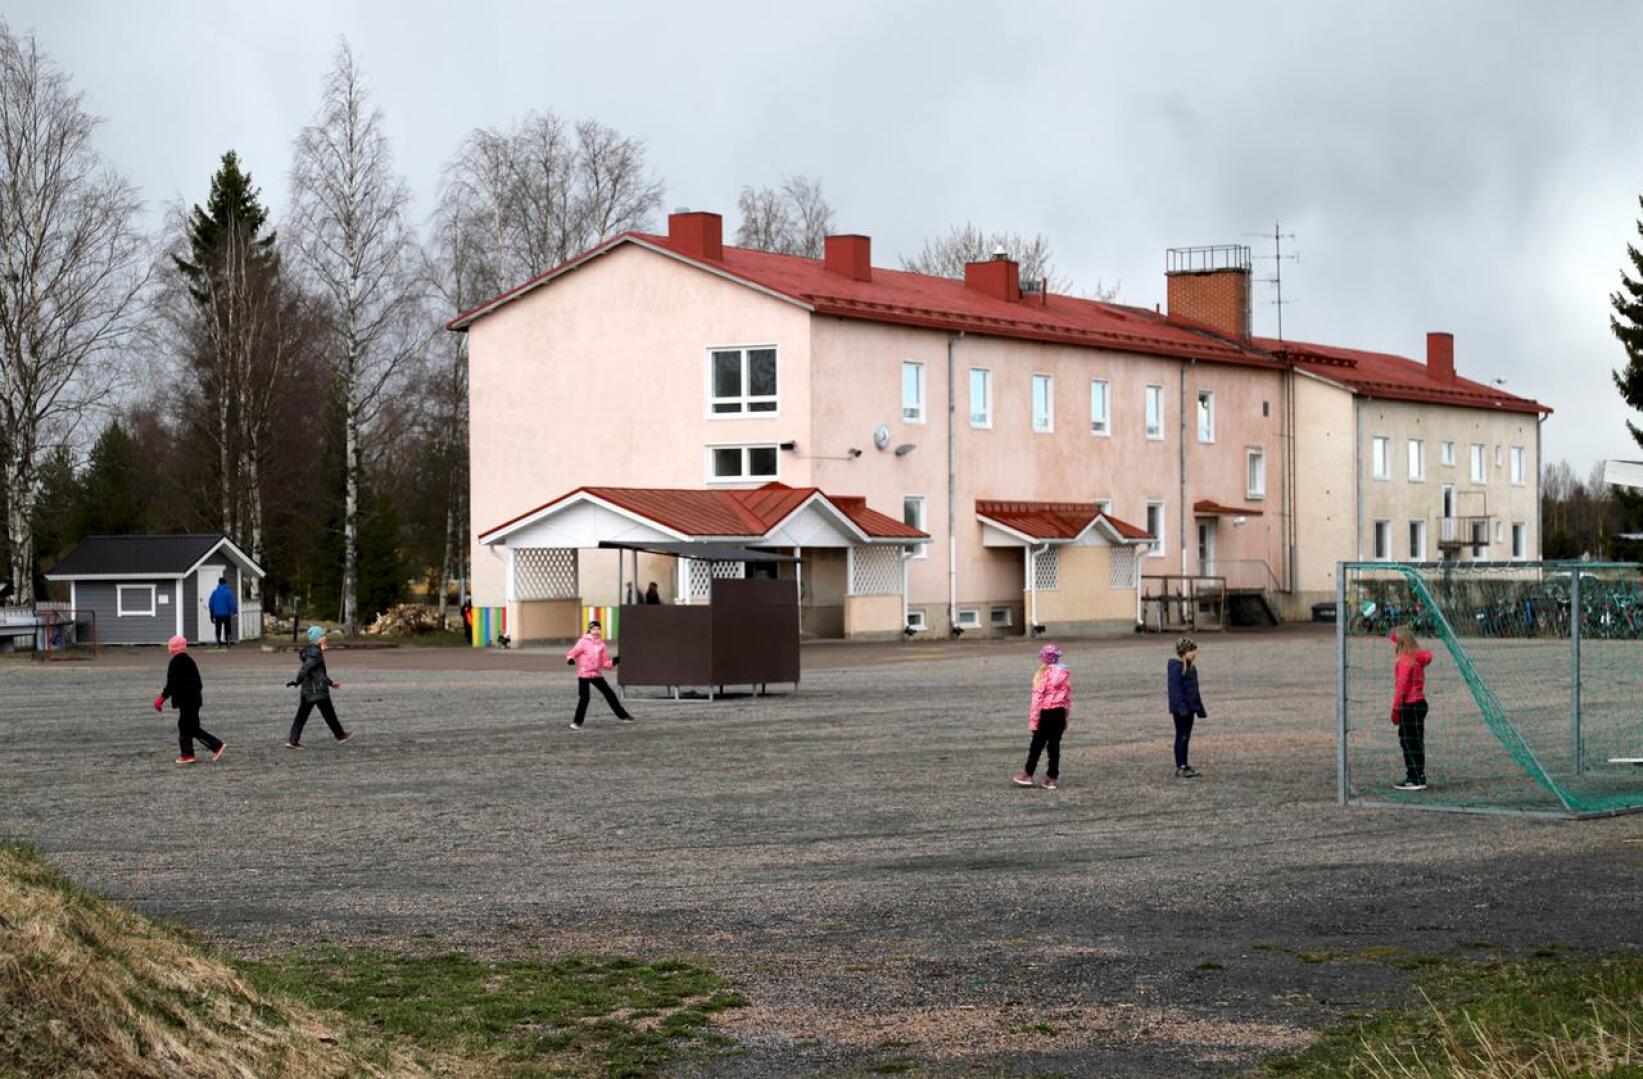 Niemelän koulun pihapiirissä on kyläpuisto ja kesäteatteri.